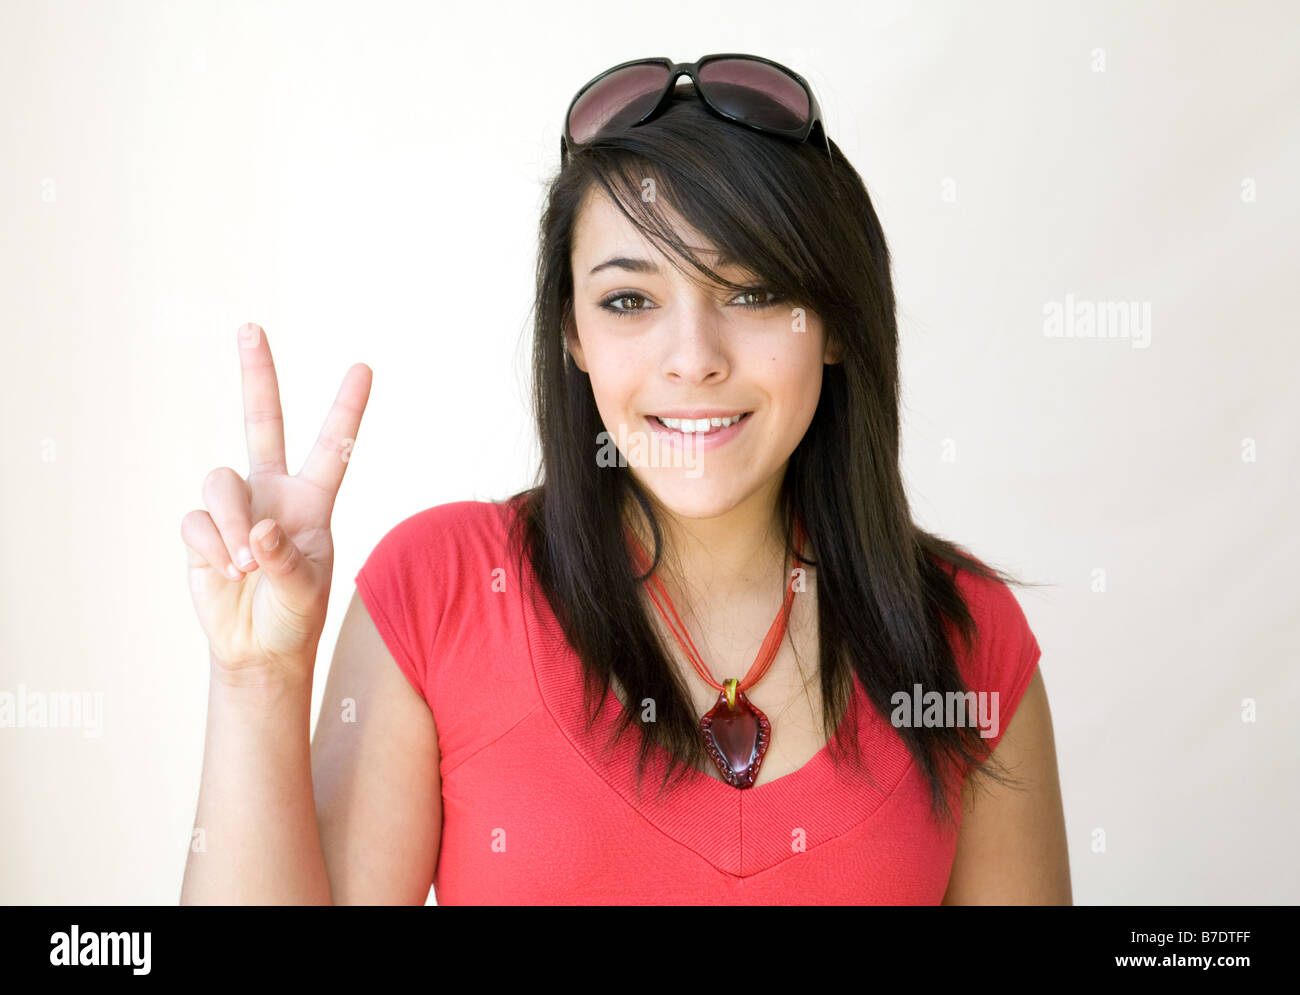 Une jeune fille avec des lunettes sur la tête donnant un signe V Photo  Stock - Alamy